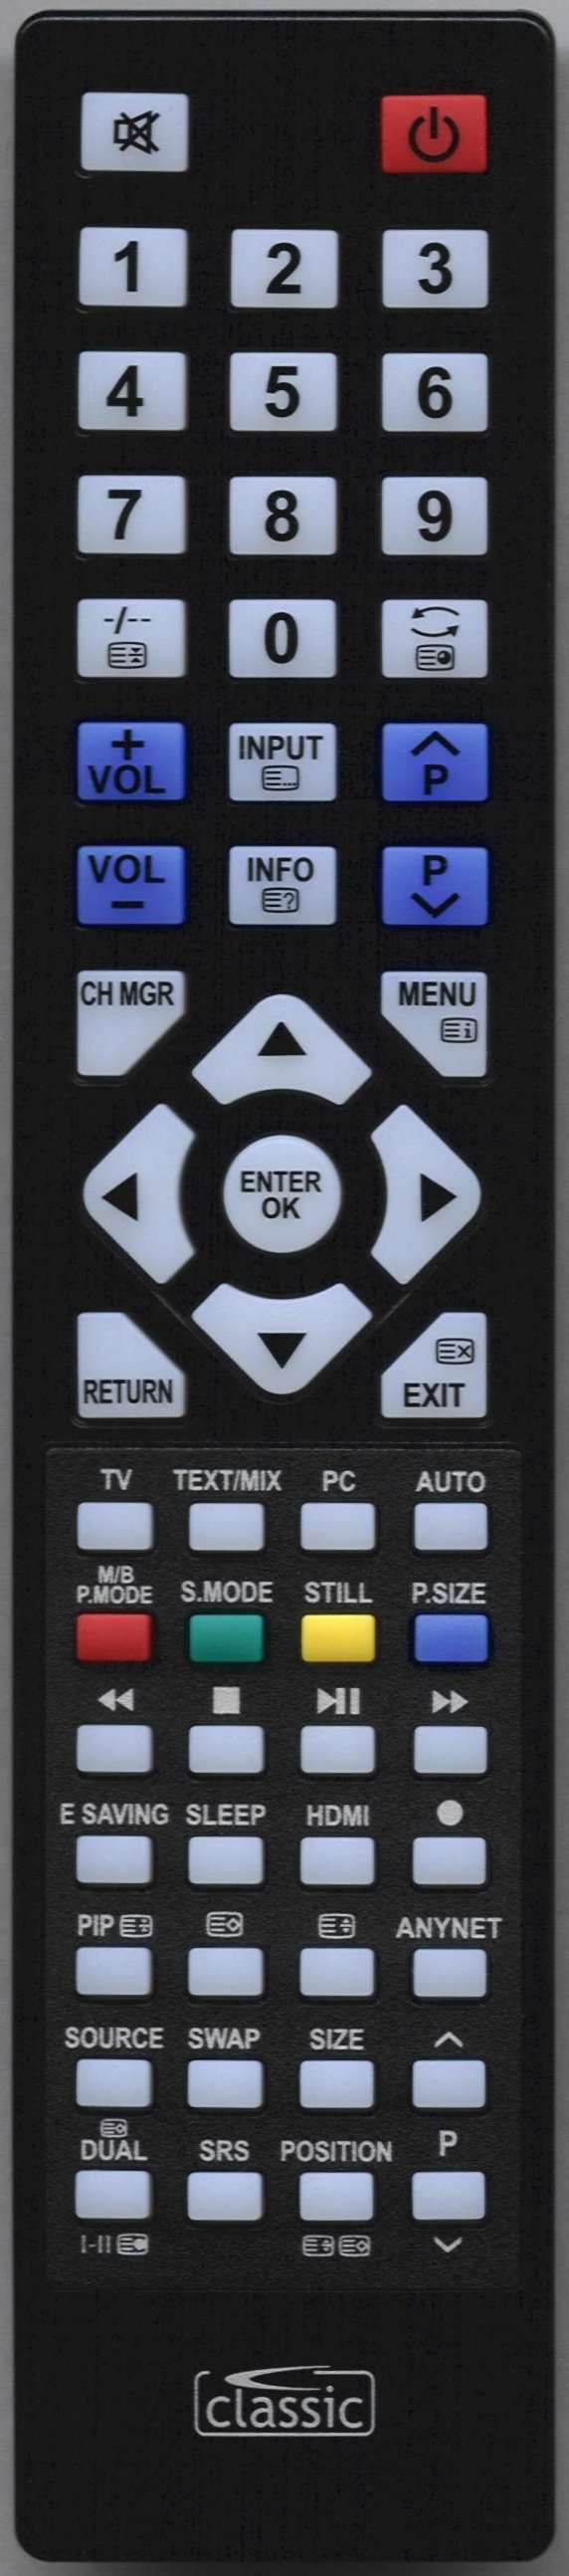 SAMSUNG PS50Q91HX/XSV Remote Control